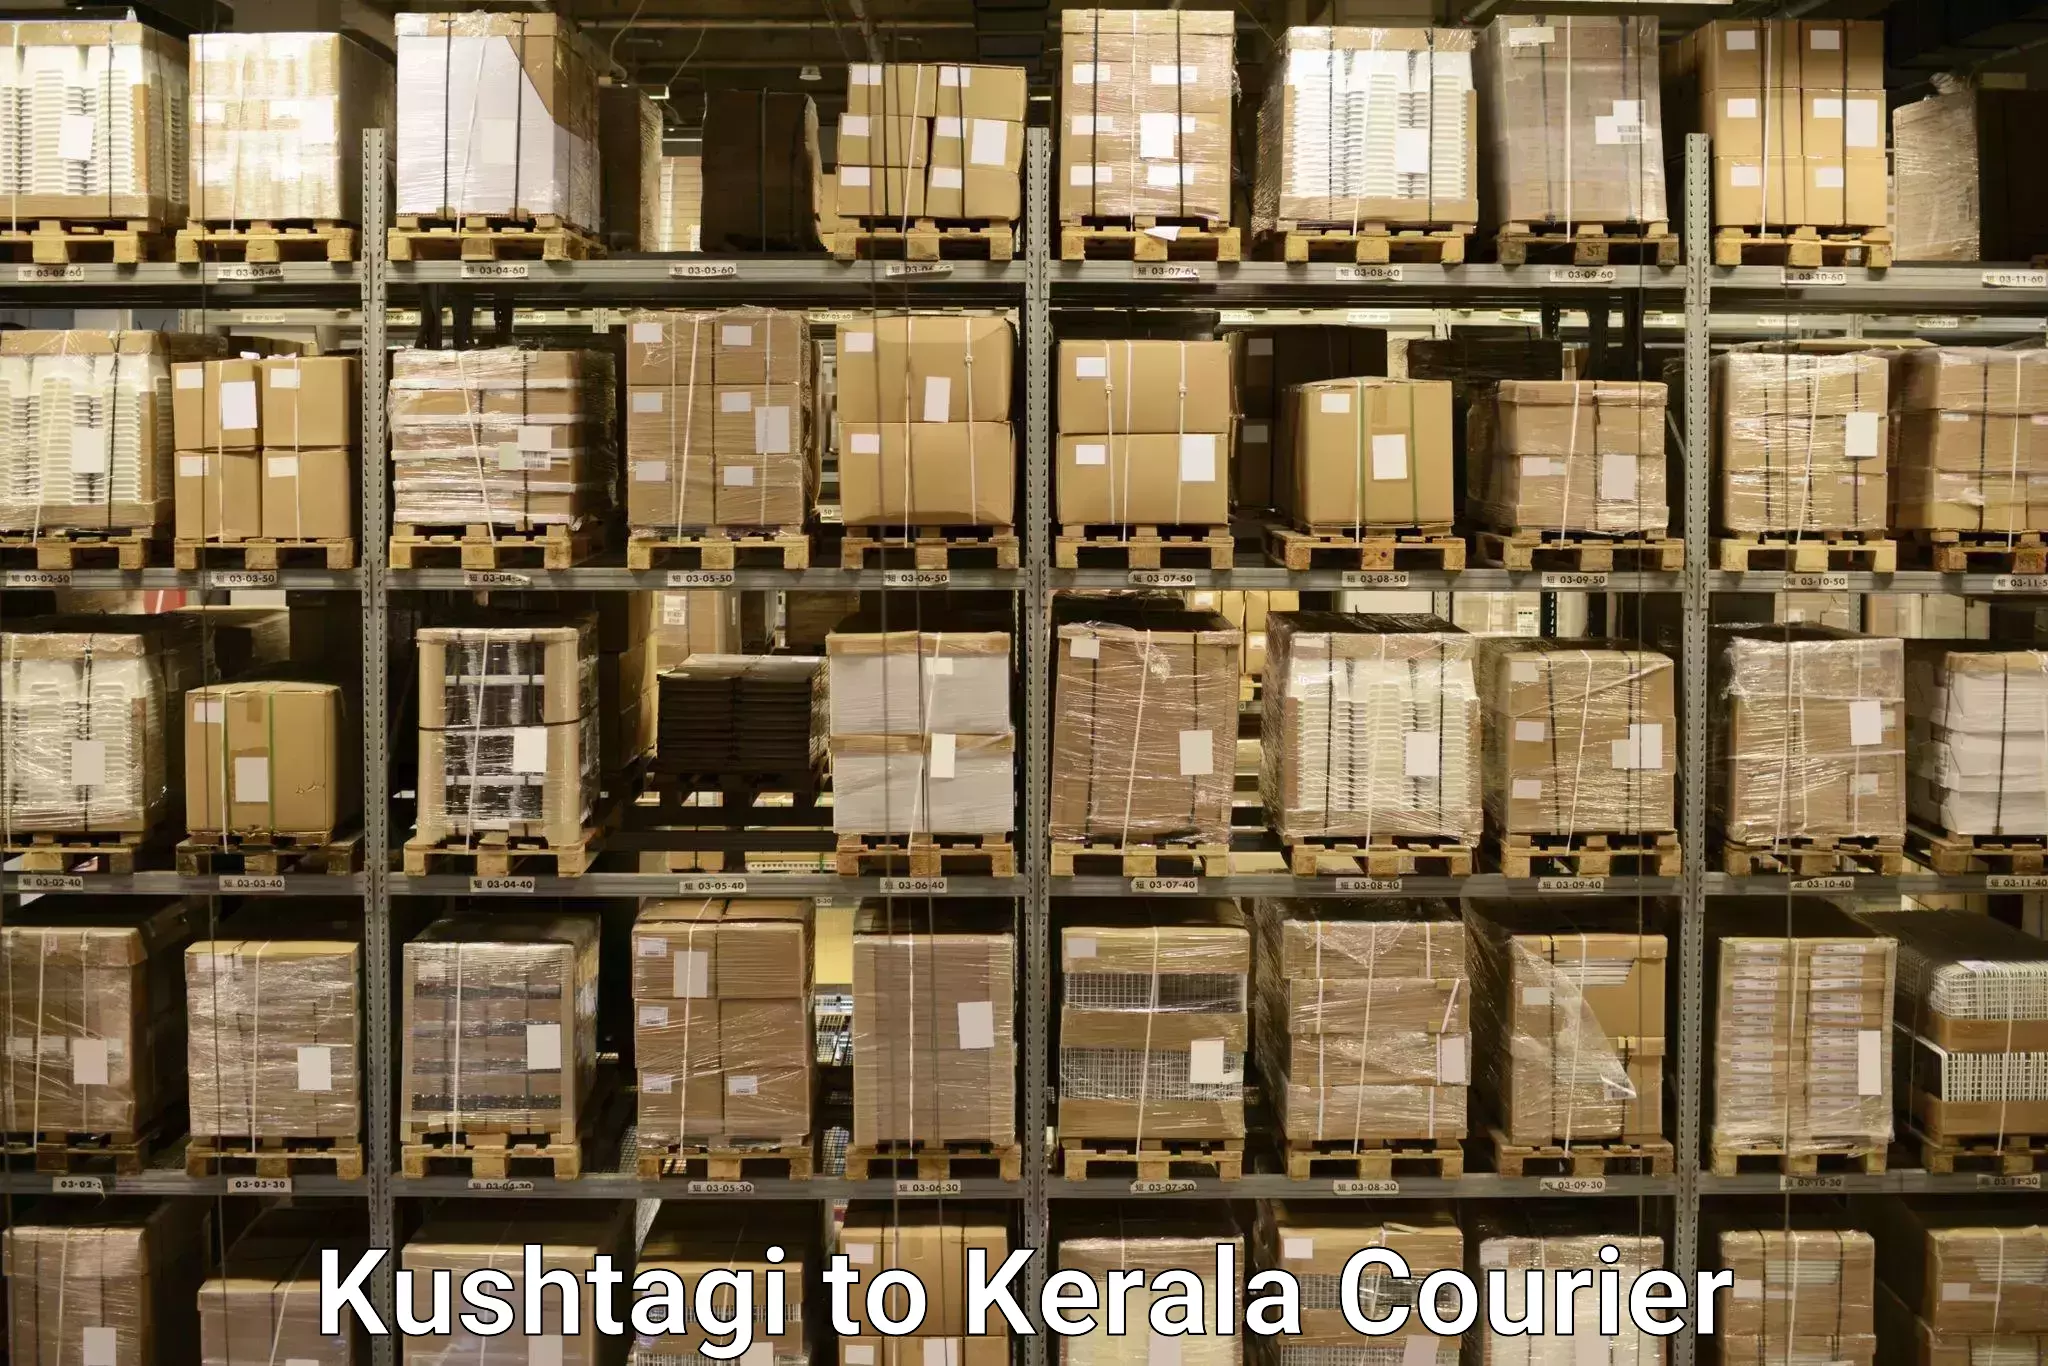 Professional baggage transport Kushtagi to Kuttiady